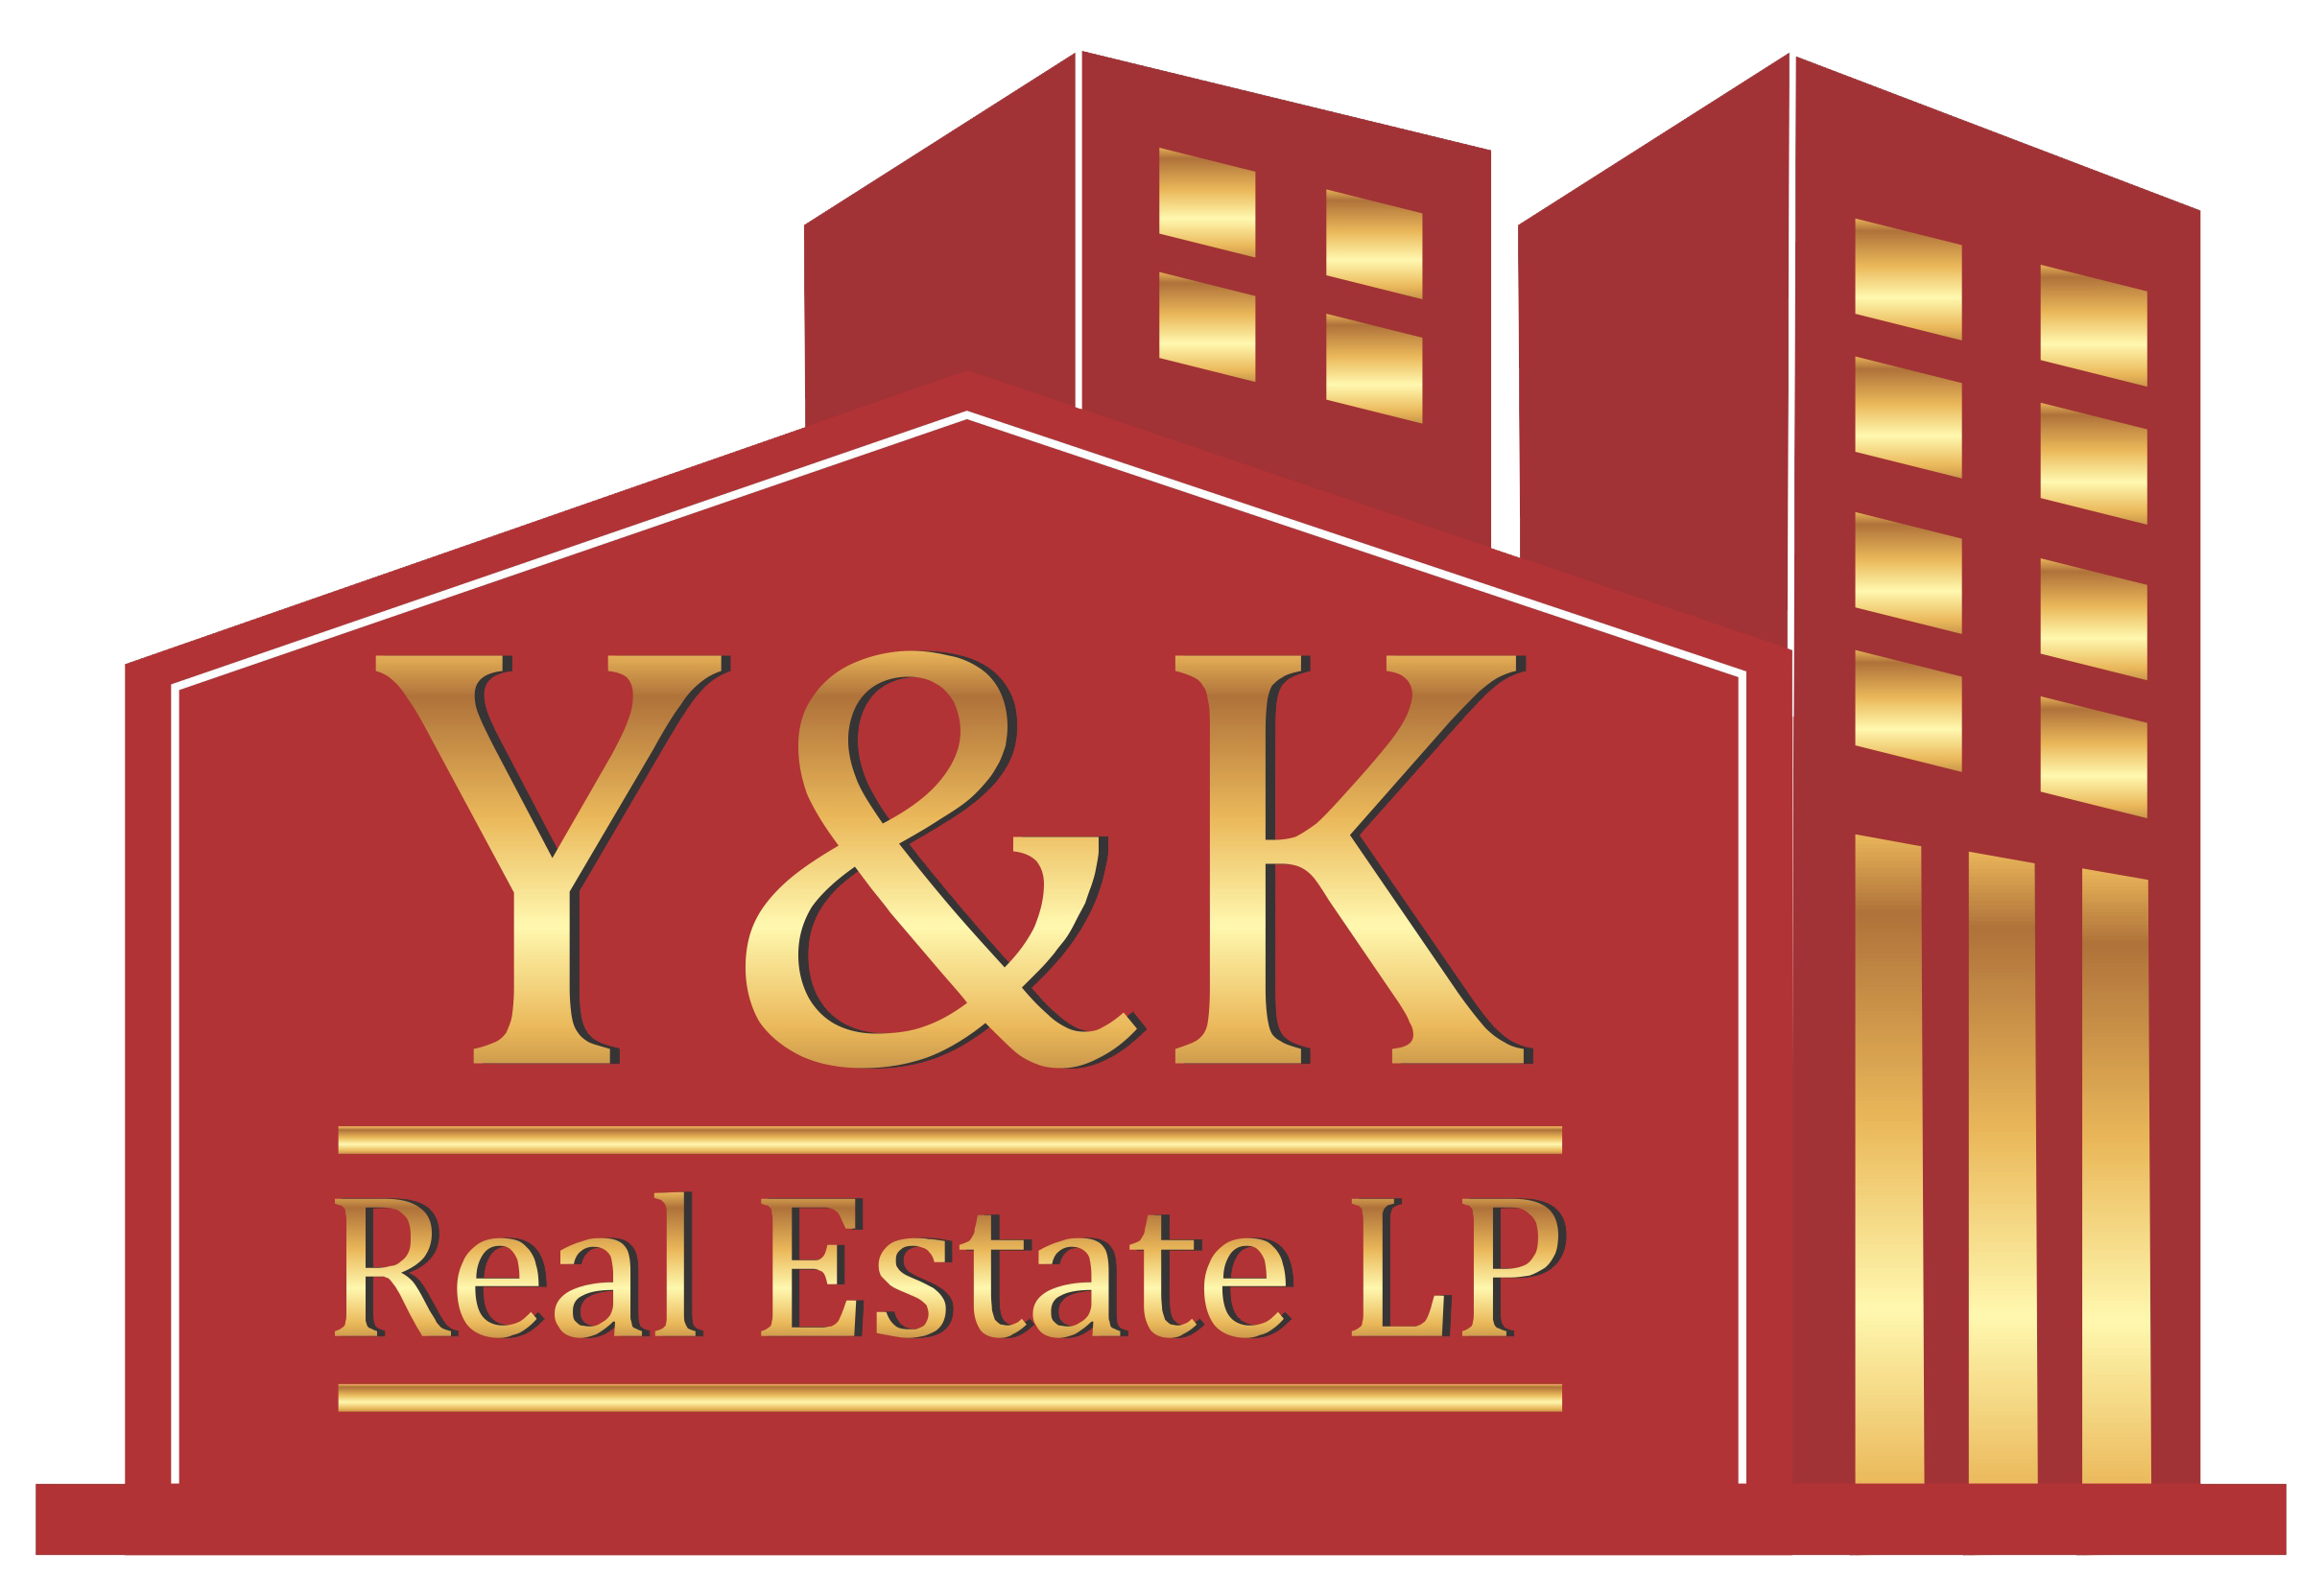 Y&K Real Estate